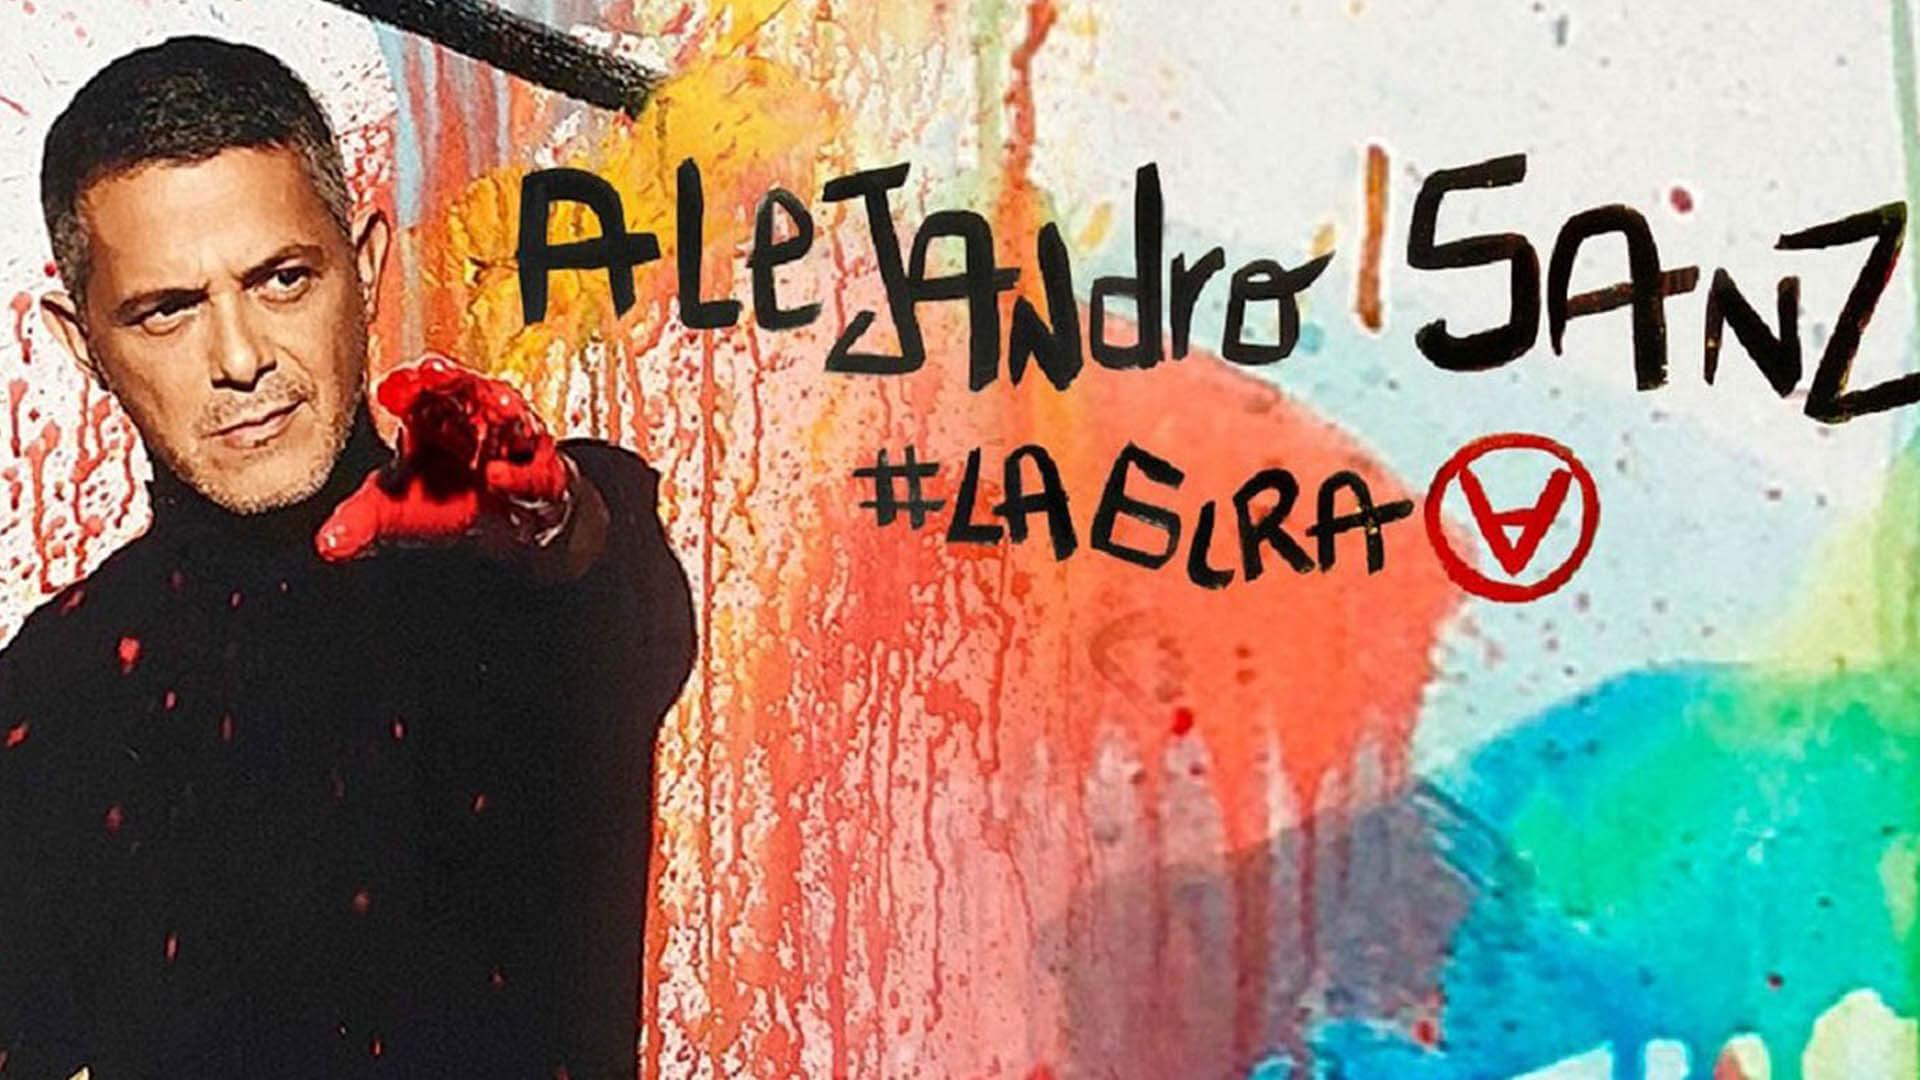 Alejandro Sanz: #Lagira de #eldisco backdrop